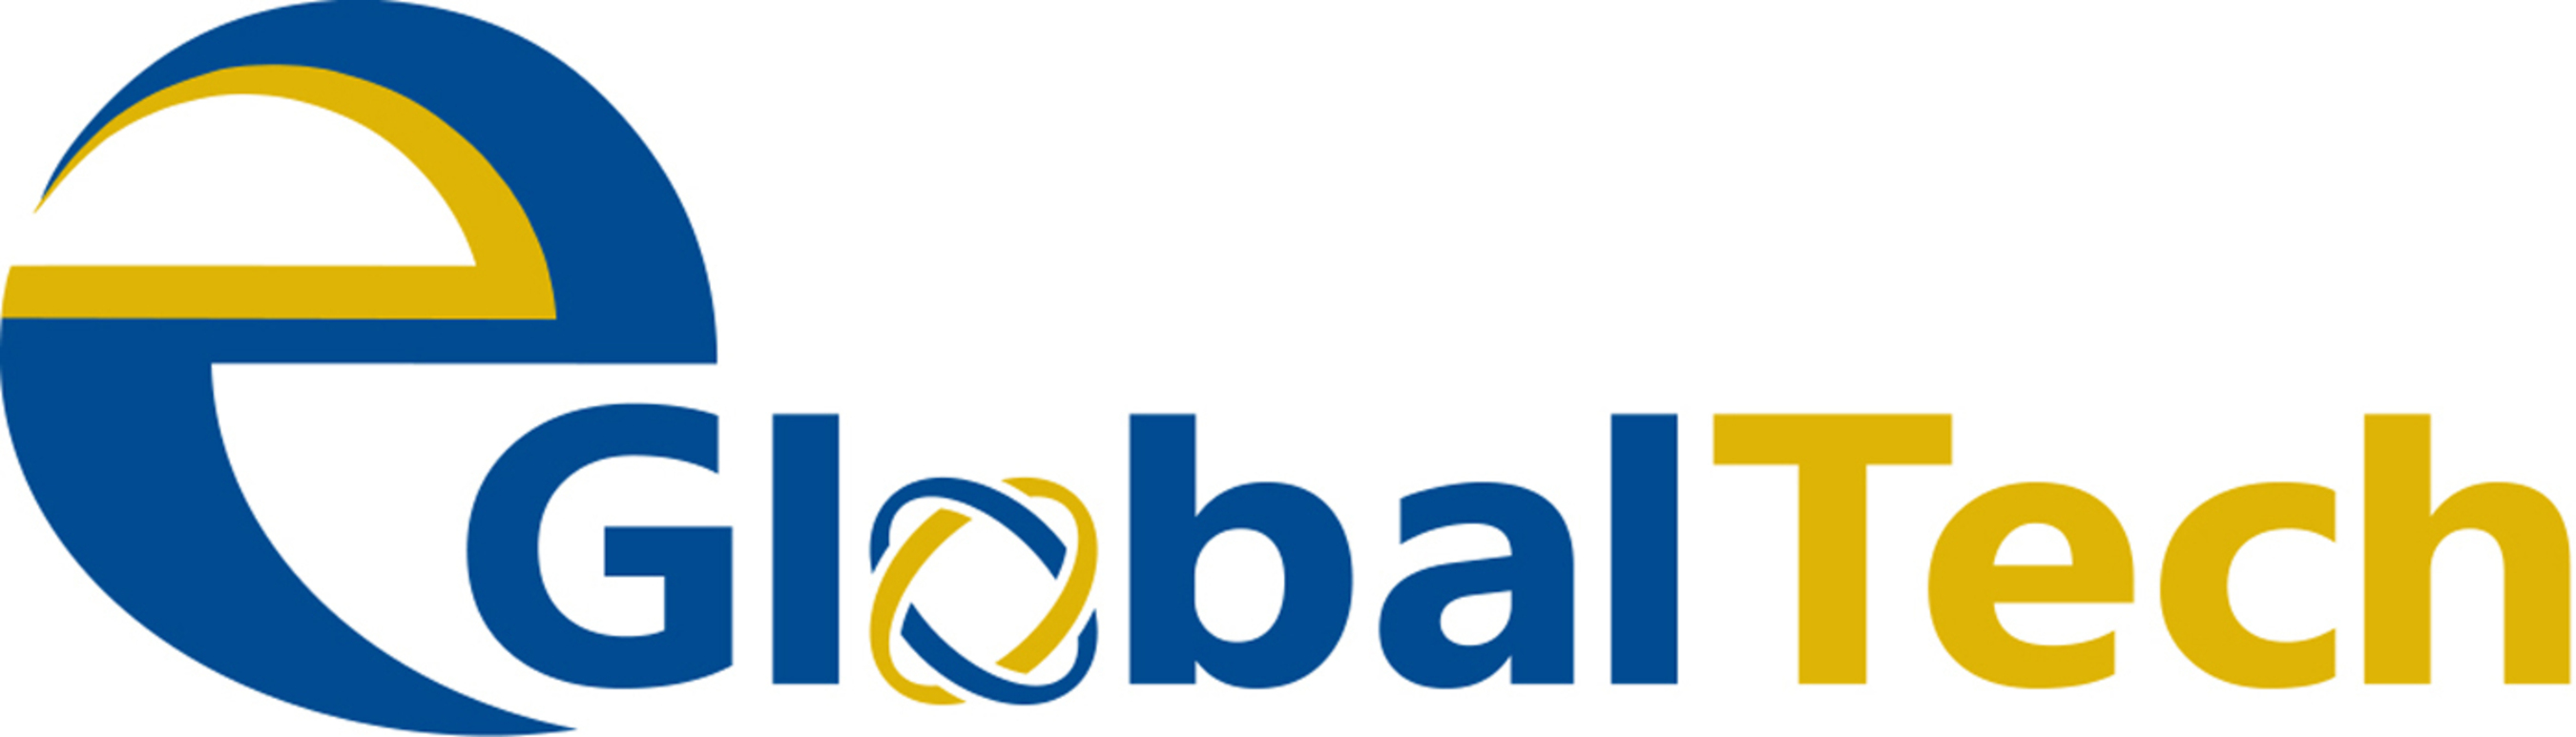 EGLOBALTECH Logo. (PRNewsFoto/eGlobalTech)